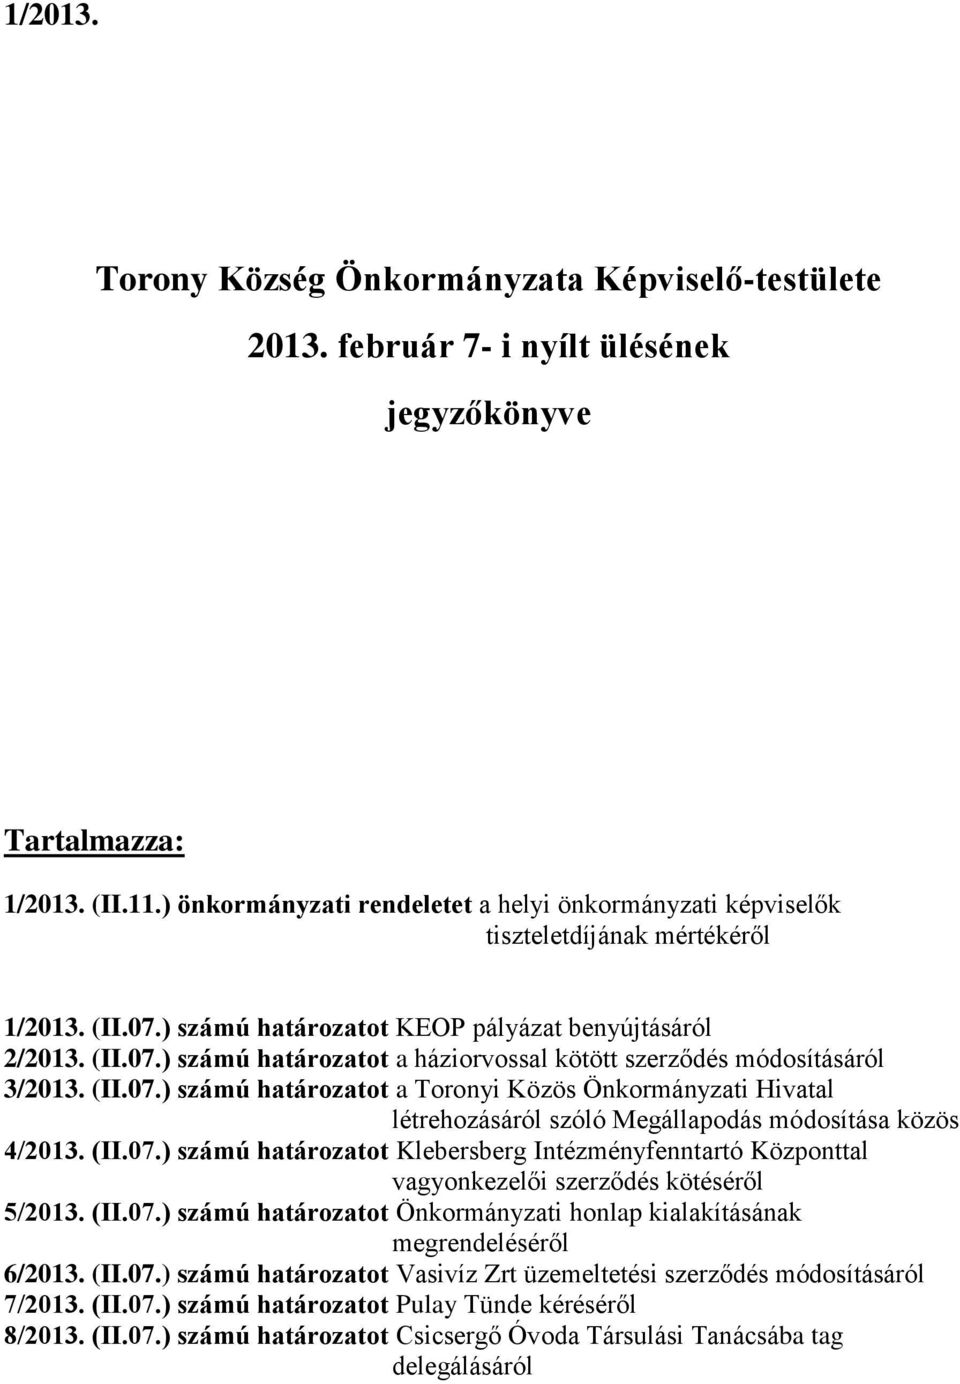 (II.07.) számú határozatot a Toronyi Közös Önkormányzati Hivatal létrehozásáról szóló Megállapodás módosítása közös 4/2013. (II.07.) számú határozatot Klebersberg Intézményfenntartó Központtal vagyonkezelői szerződés kötéséről 5/2013.